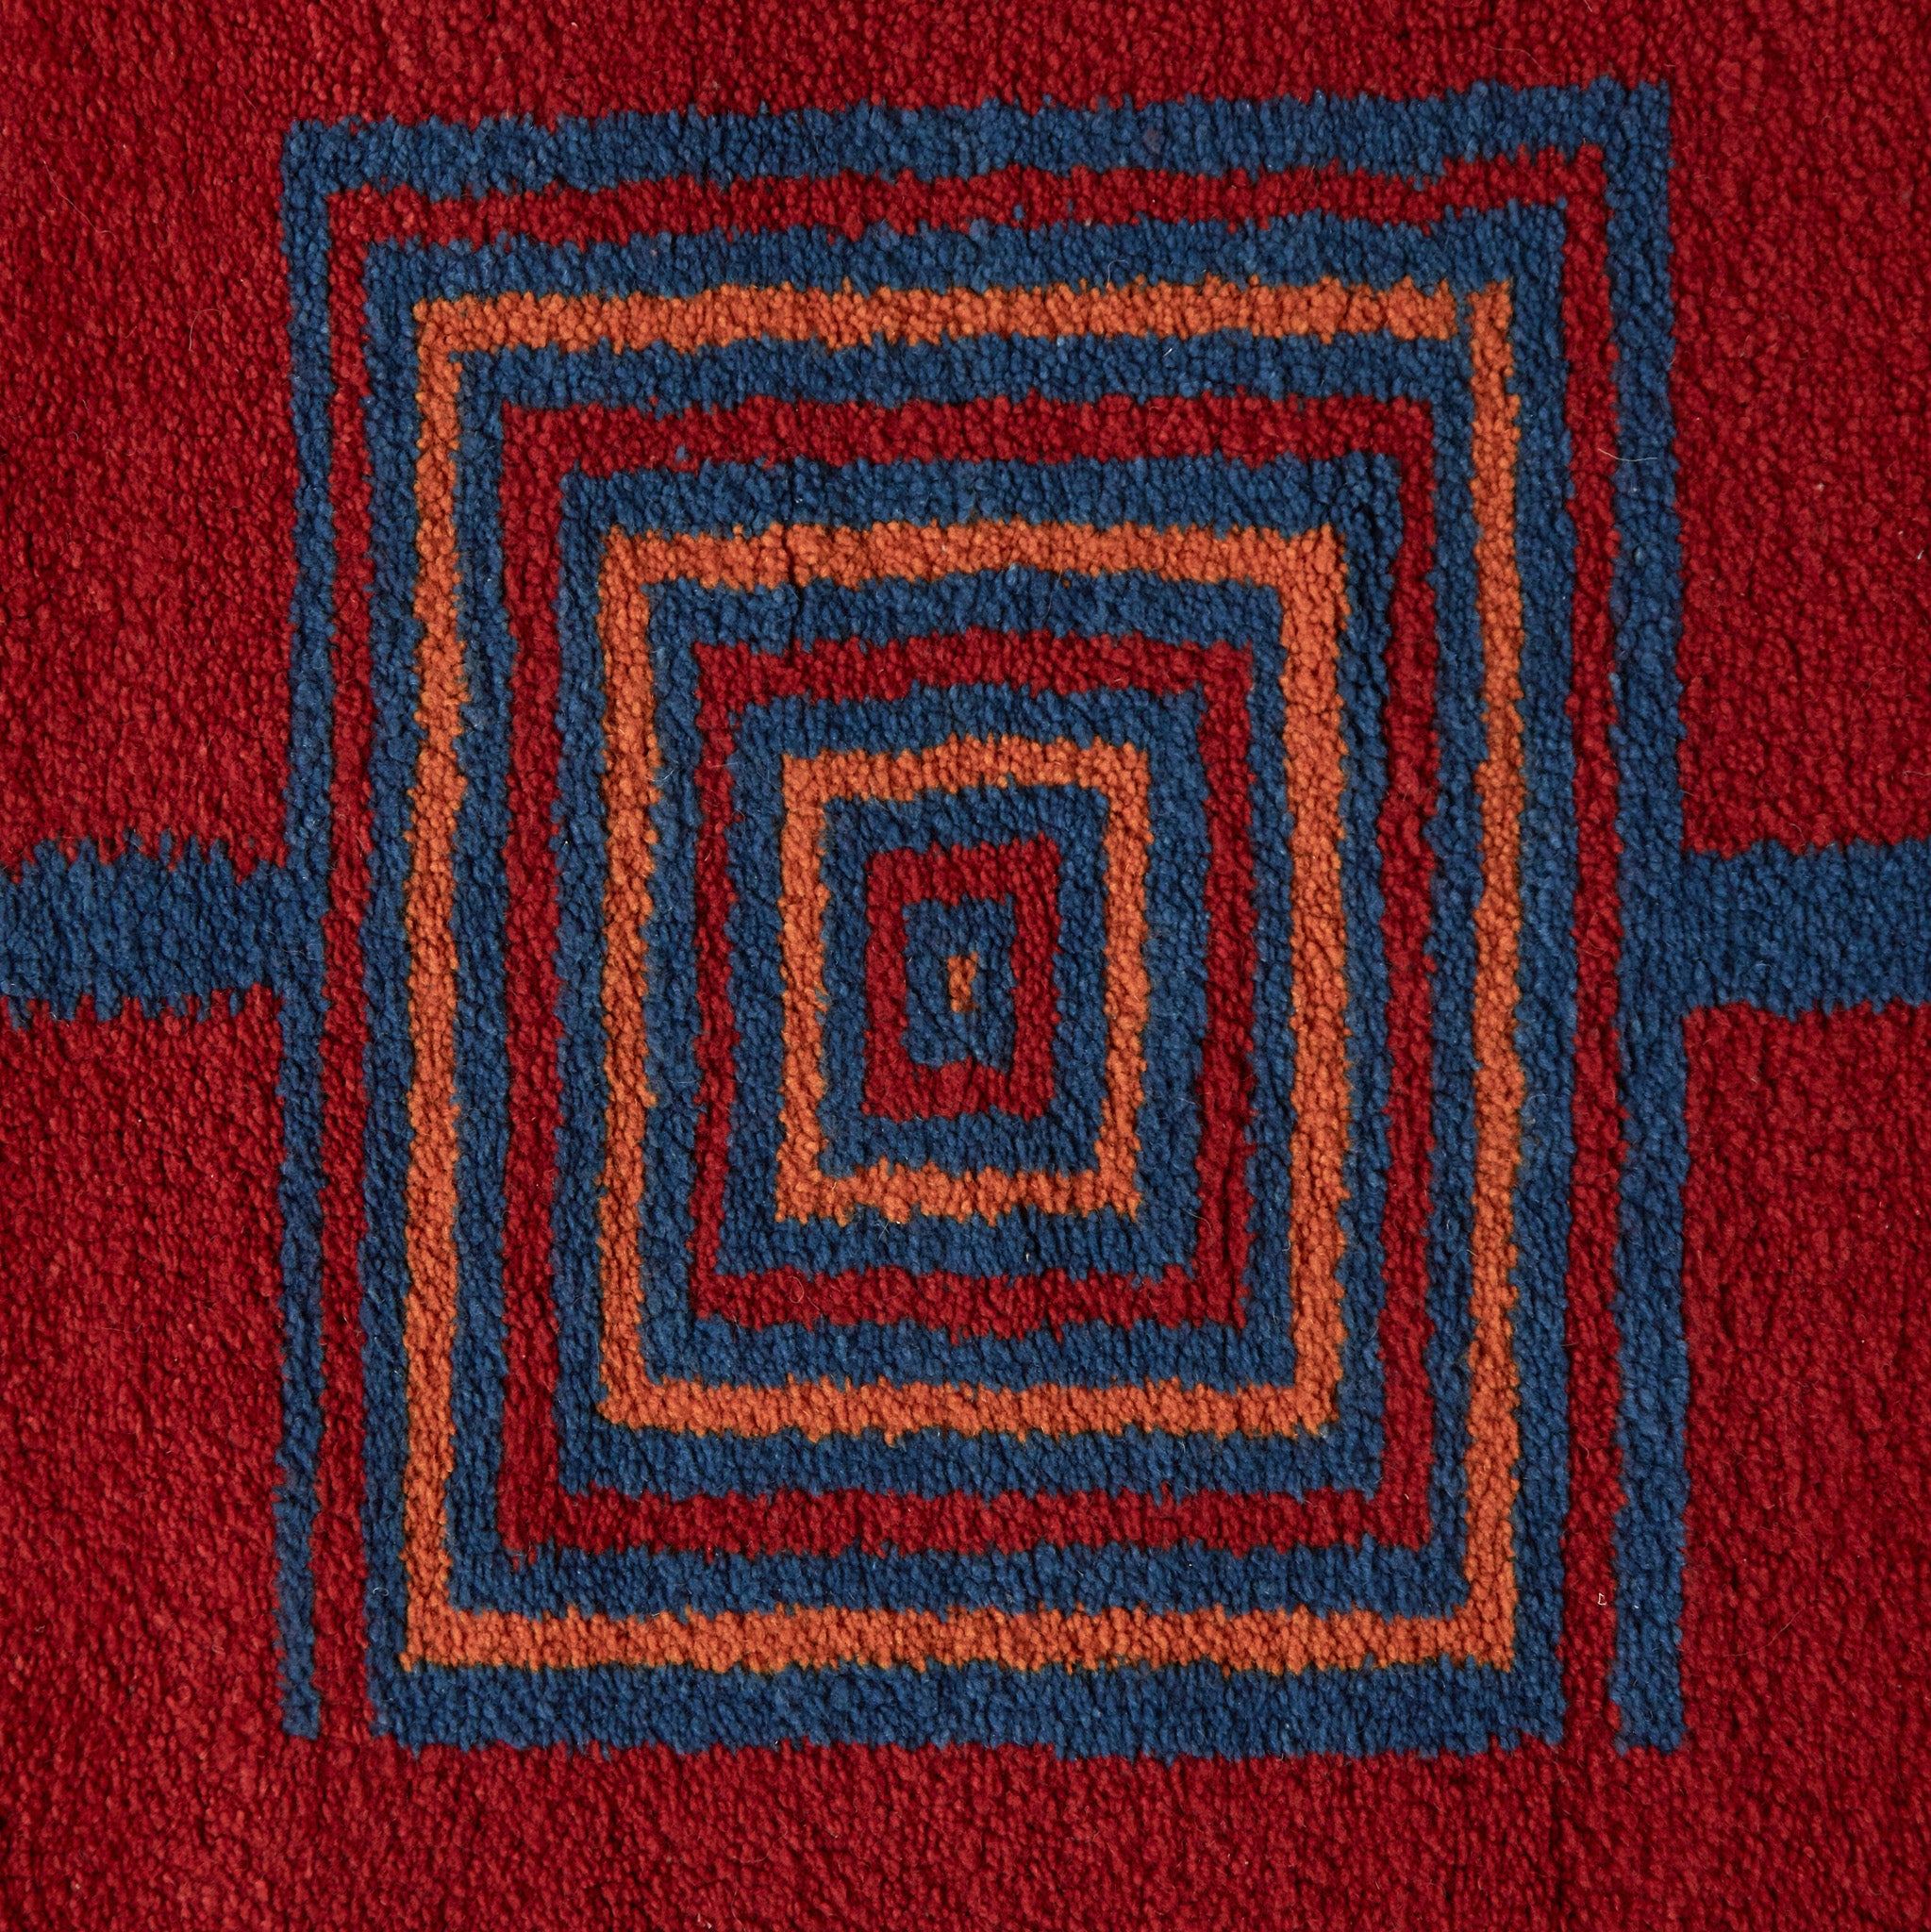 disegno geometrico blue e arancione su base rossa di un tappeto taznakht piccolo realizzato con lana siroua tinta con colori naturali su base rossa e disegni geometrici